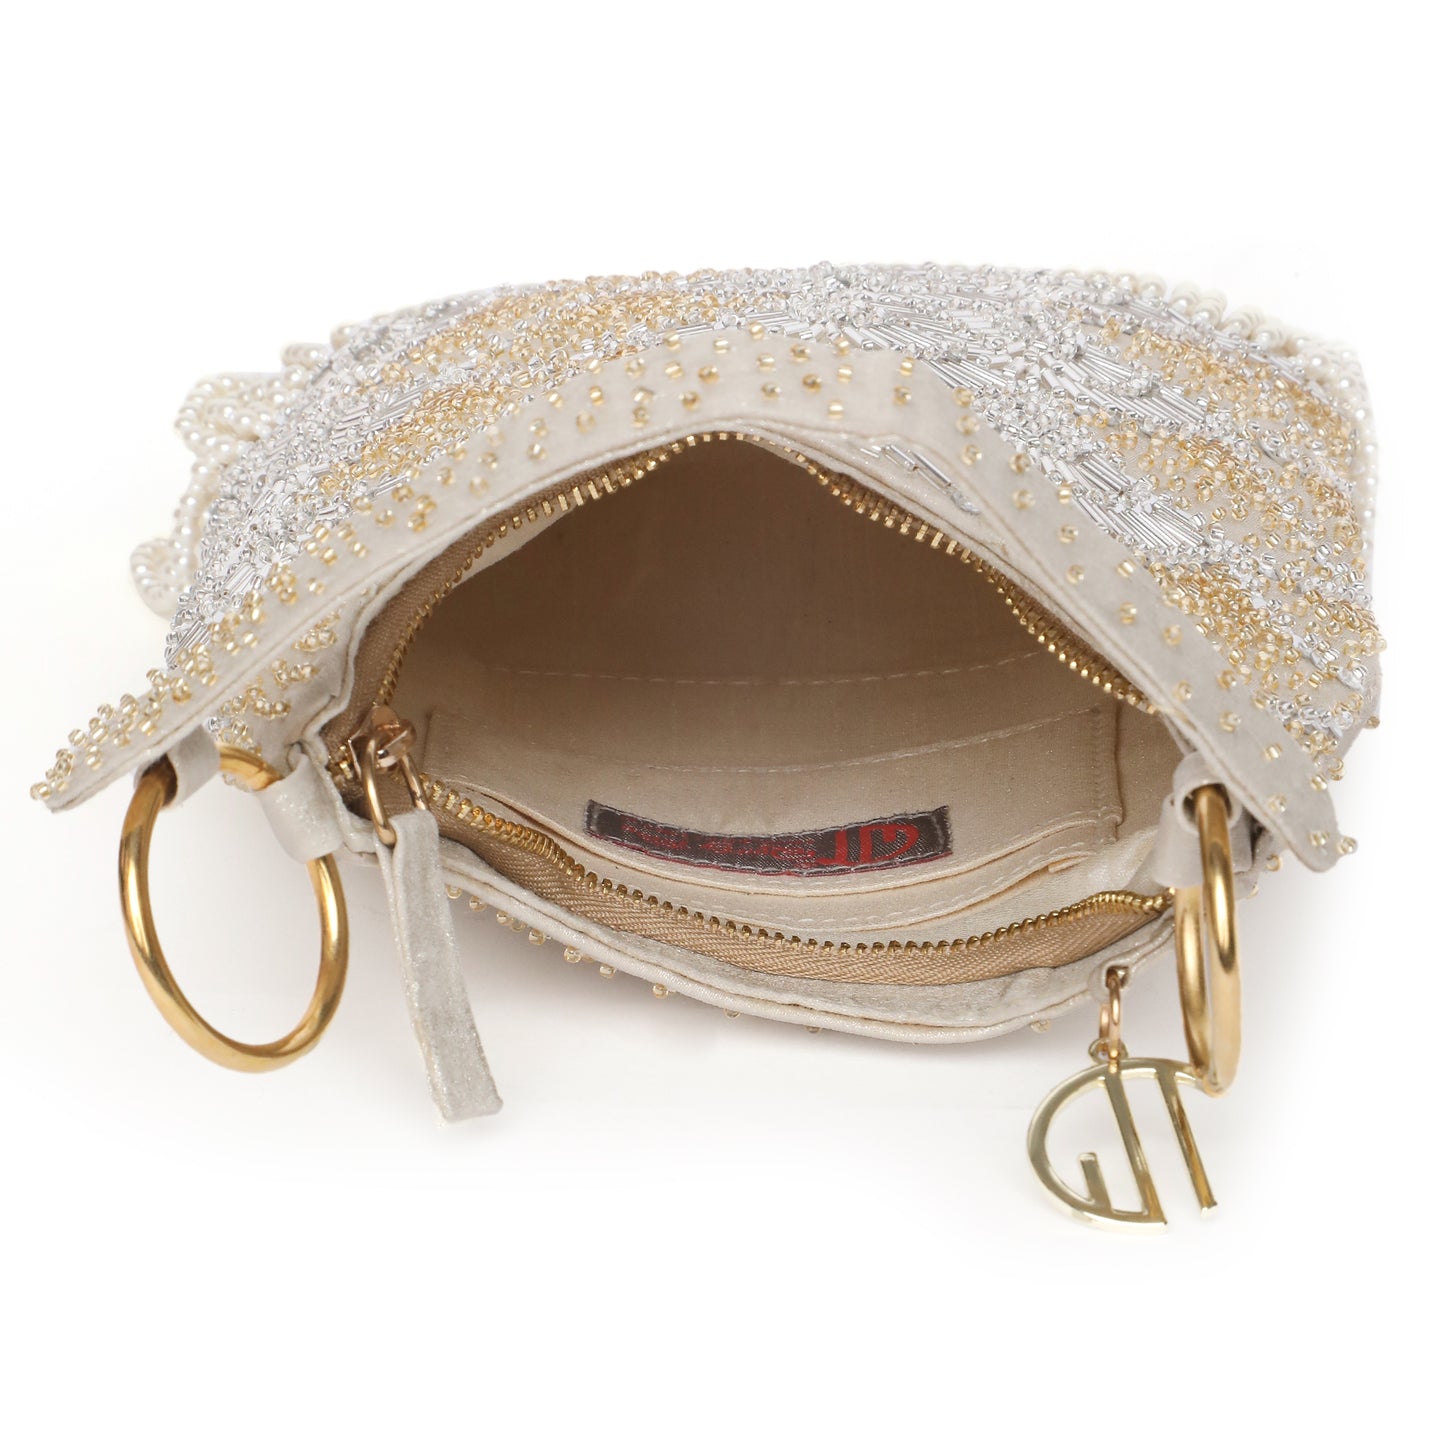 Ira Gold embellished handbag